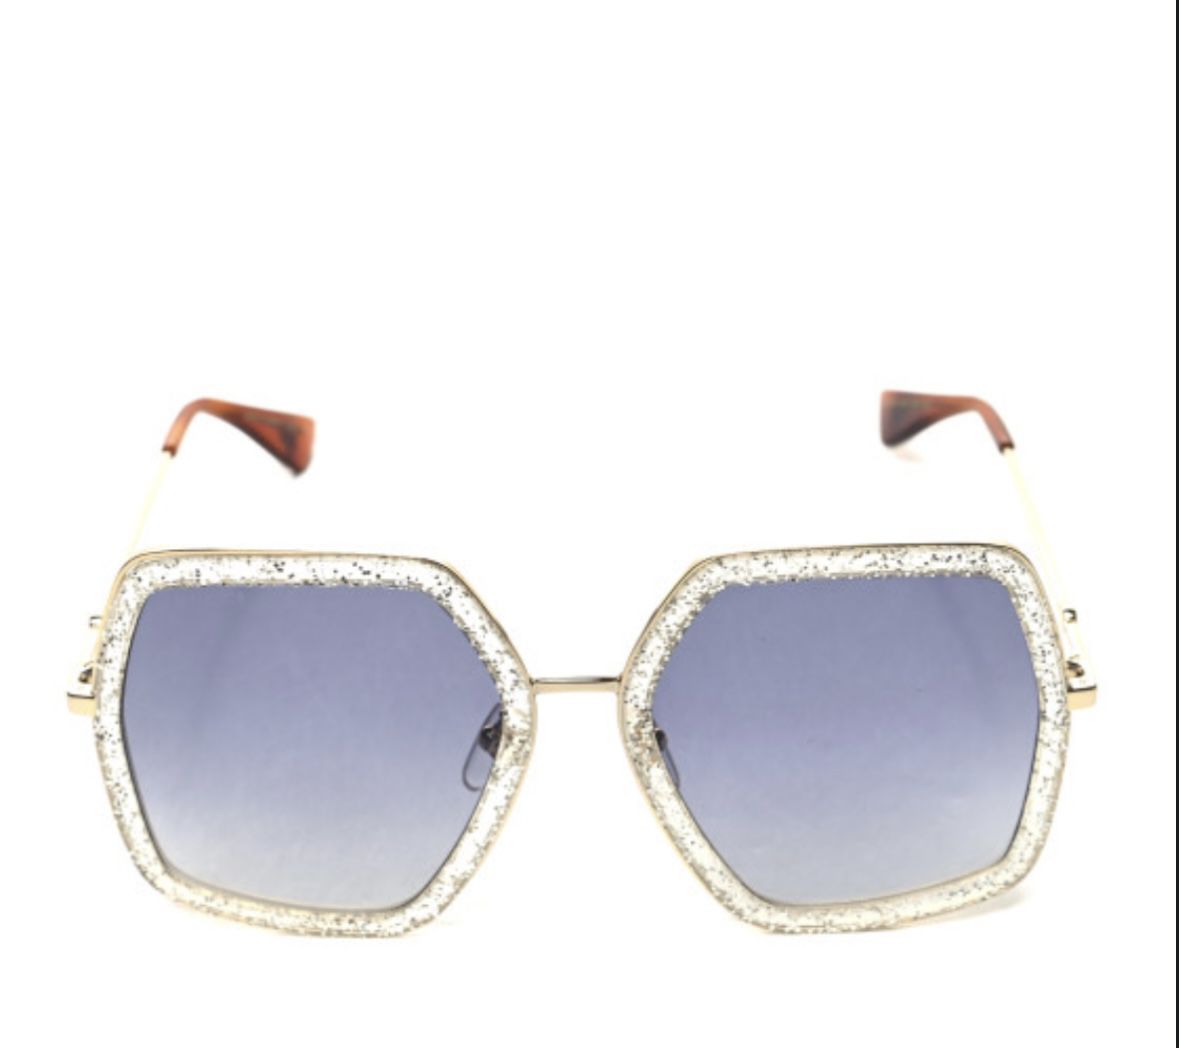 Gucci Woman’s Fashion Sunglasses 